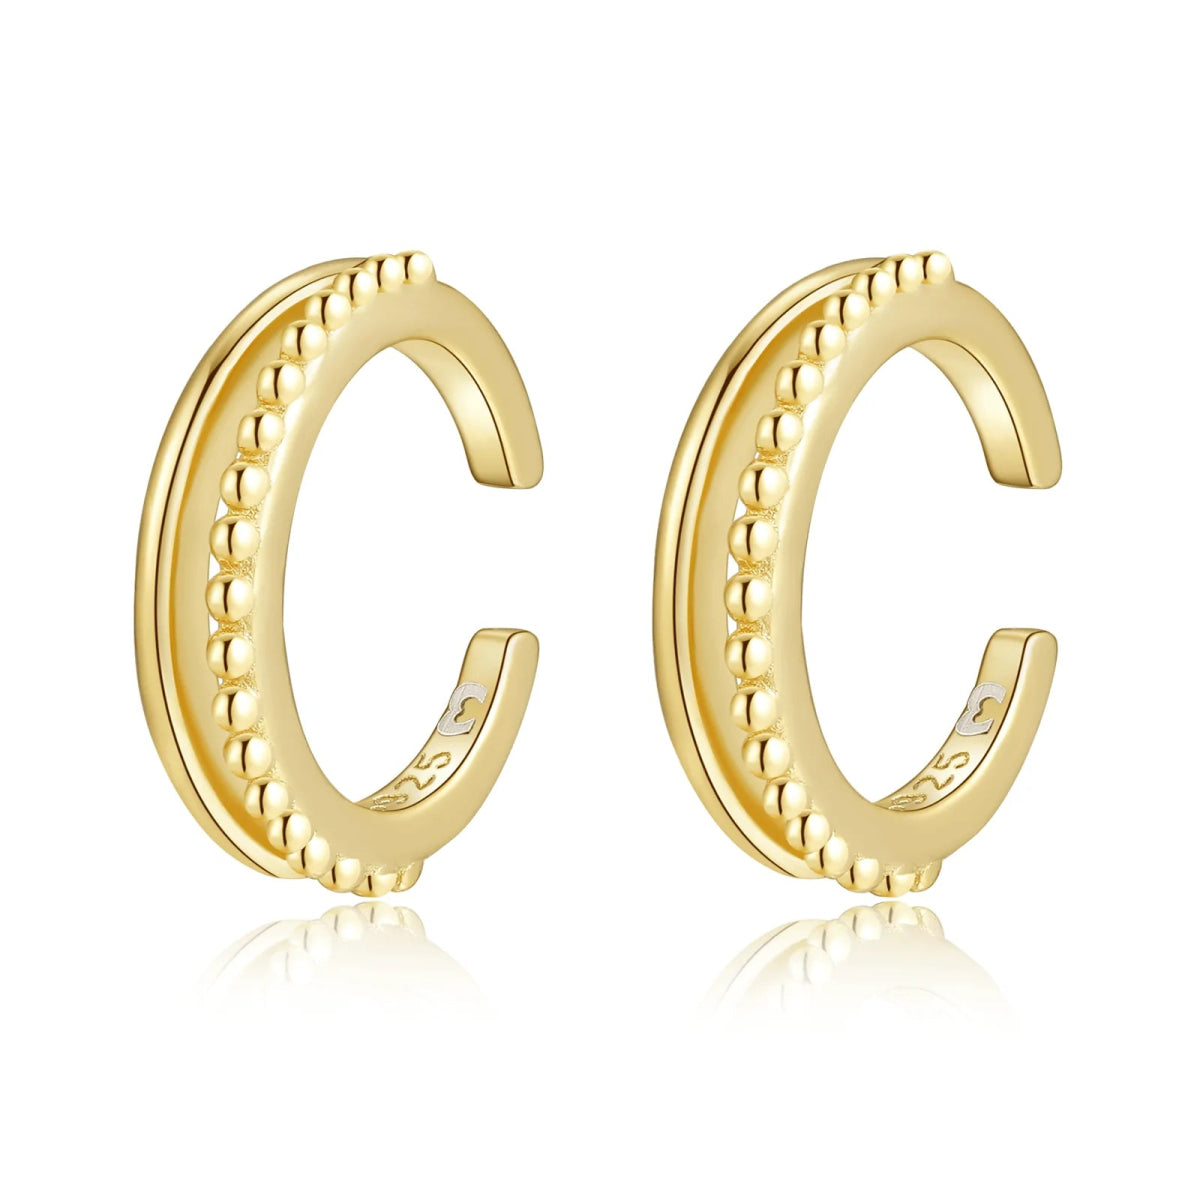 "Ear Cuff - Clipper" Earrings - Milas Jewels Shop